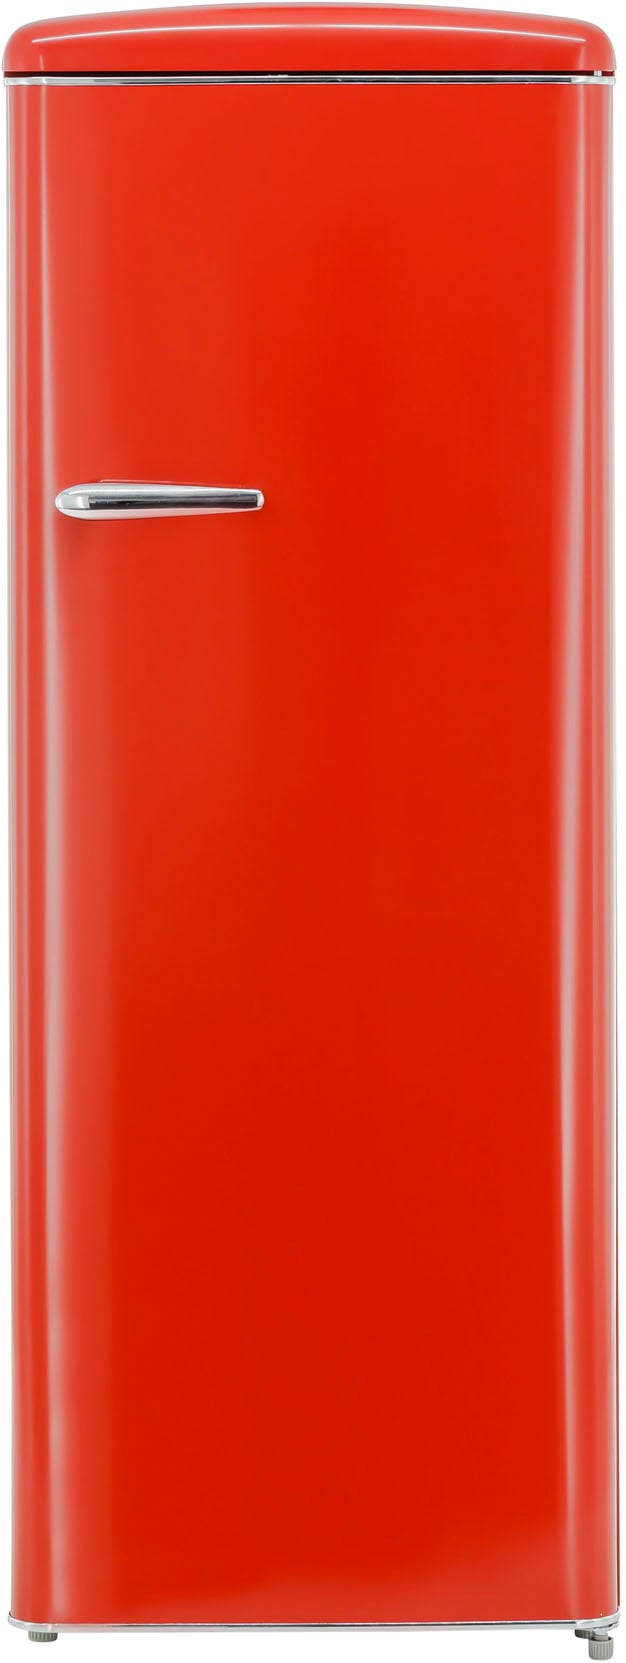 exquisit Kühlschrank "RKS325-V-H-160F", RKS325-V-H-160F rot, 144 cm hoch, 55 cm breit, 229 L Volumen